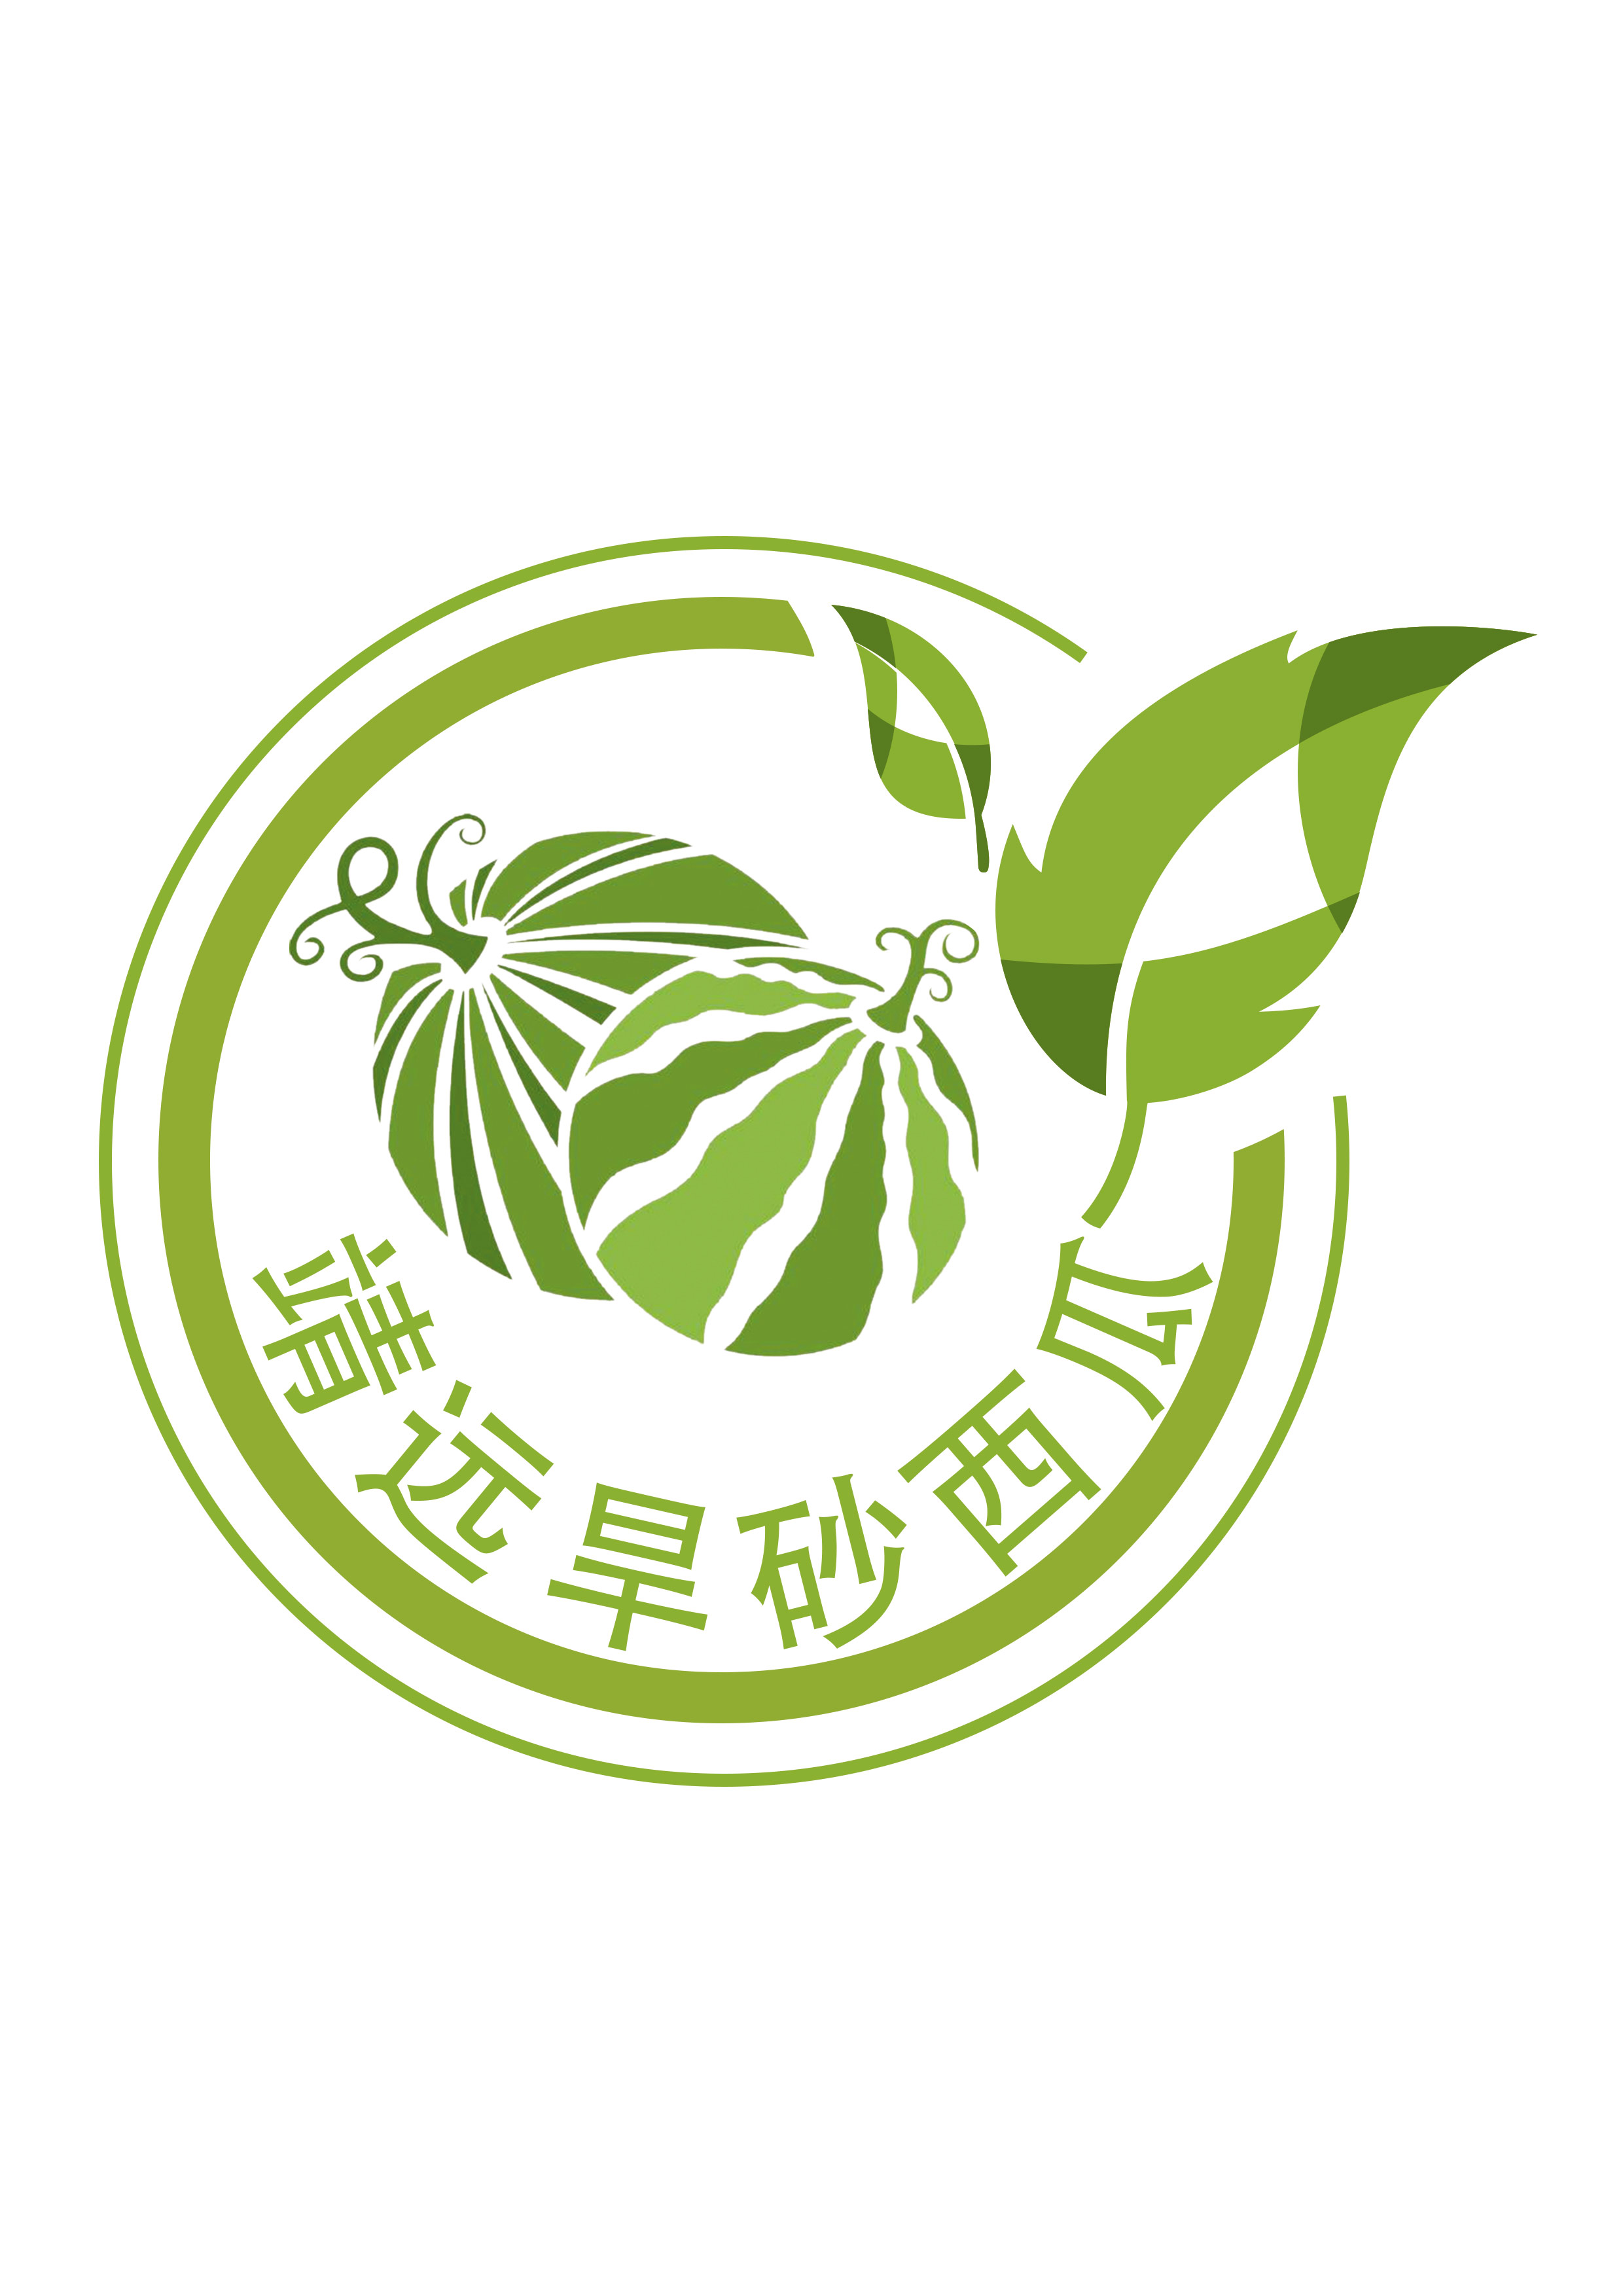 靖远旱砂西瓜-logo.jpg